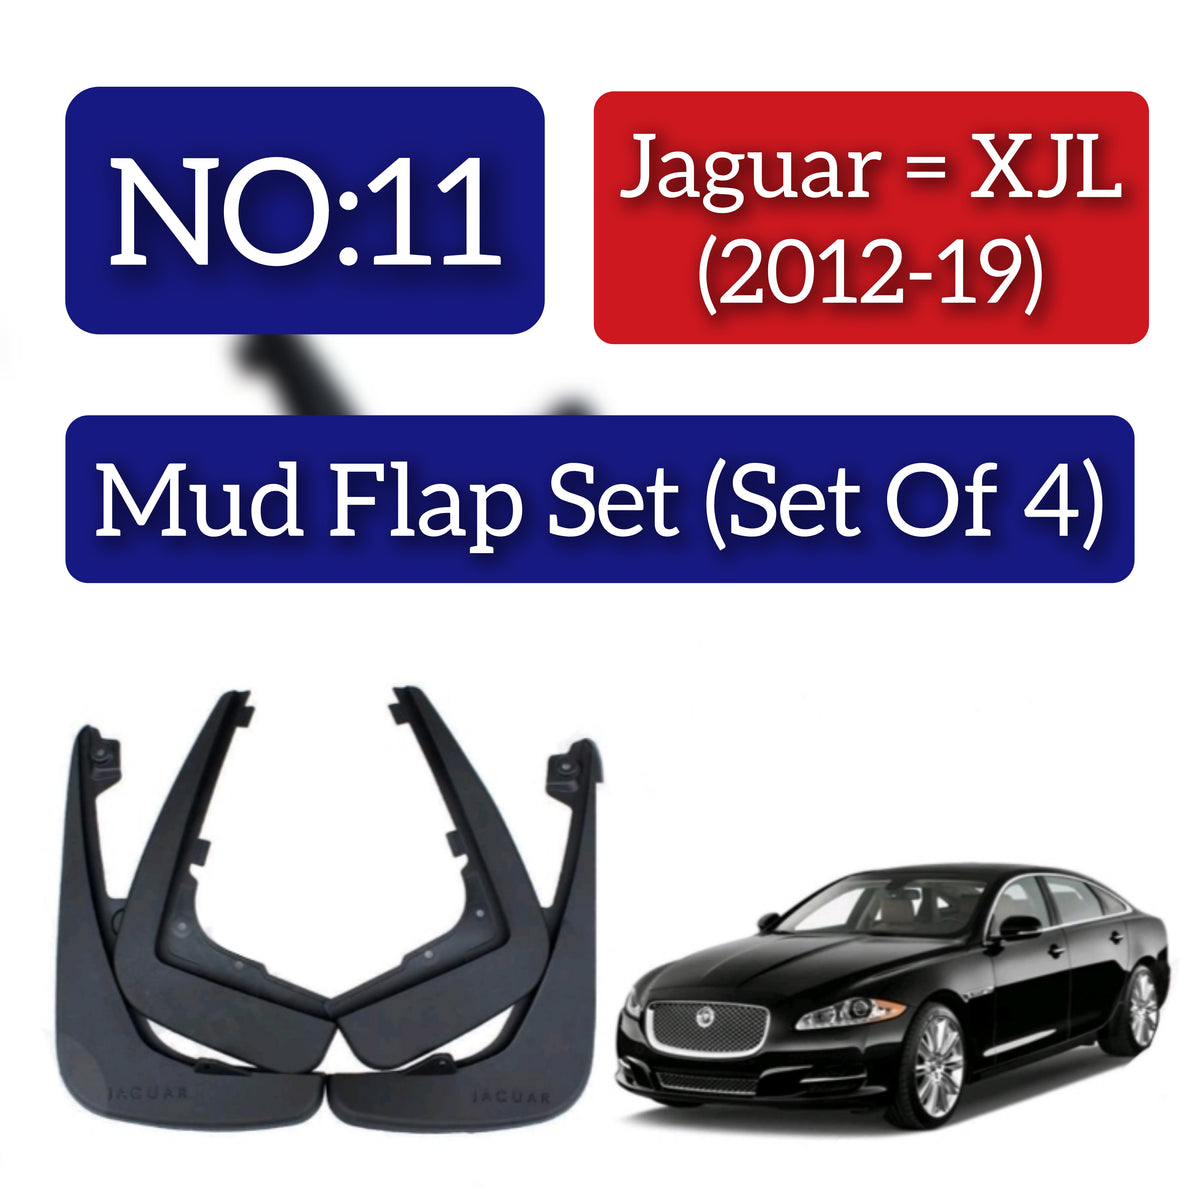 Jaguar = XJL (2012-19) Mud Flap Set (Set of 4) Tag 11